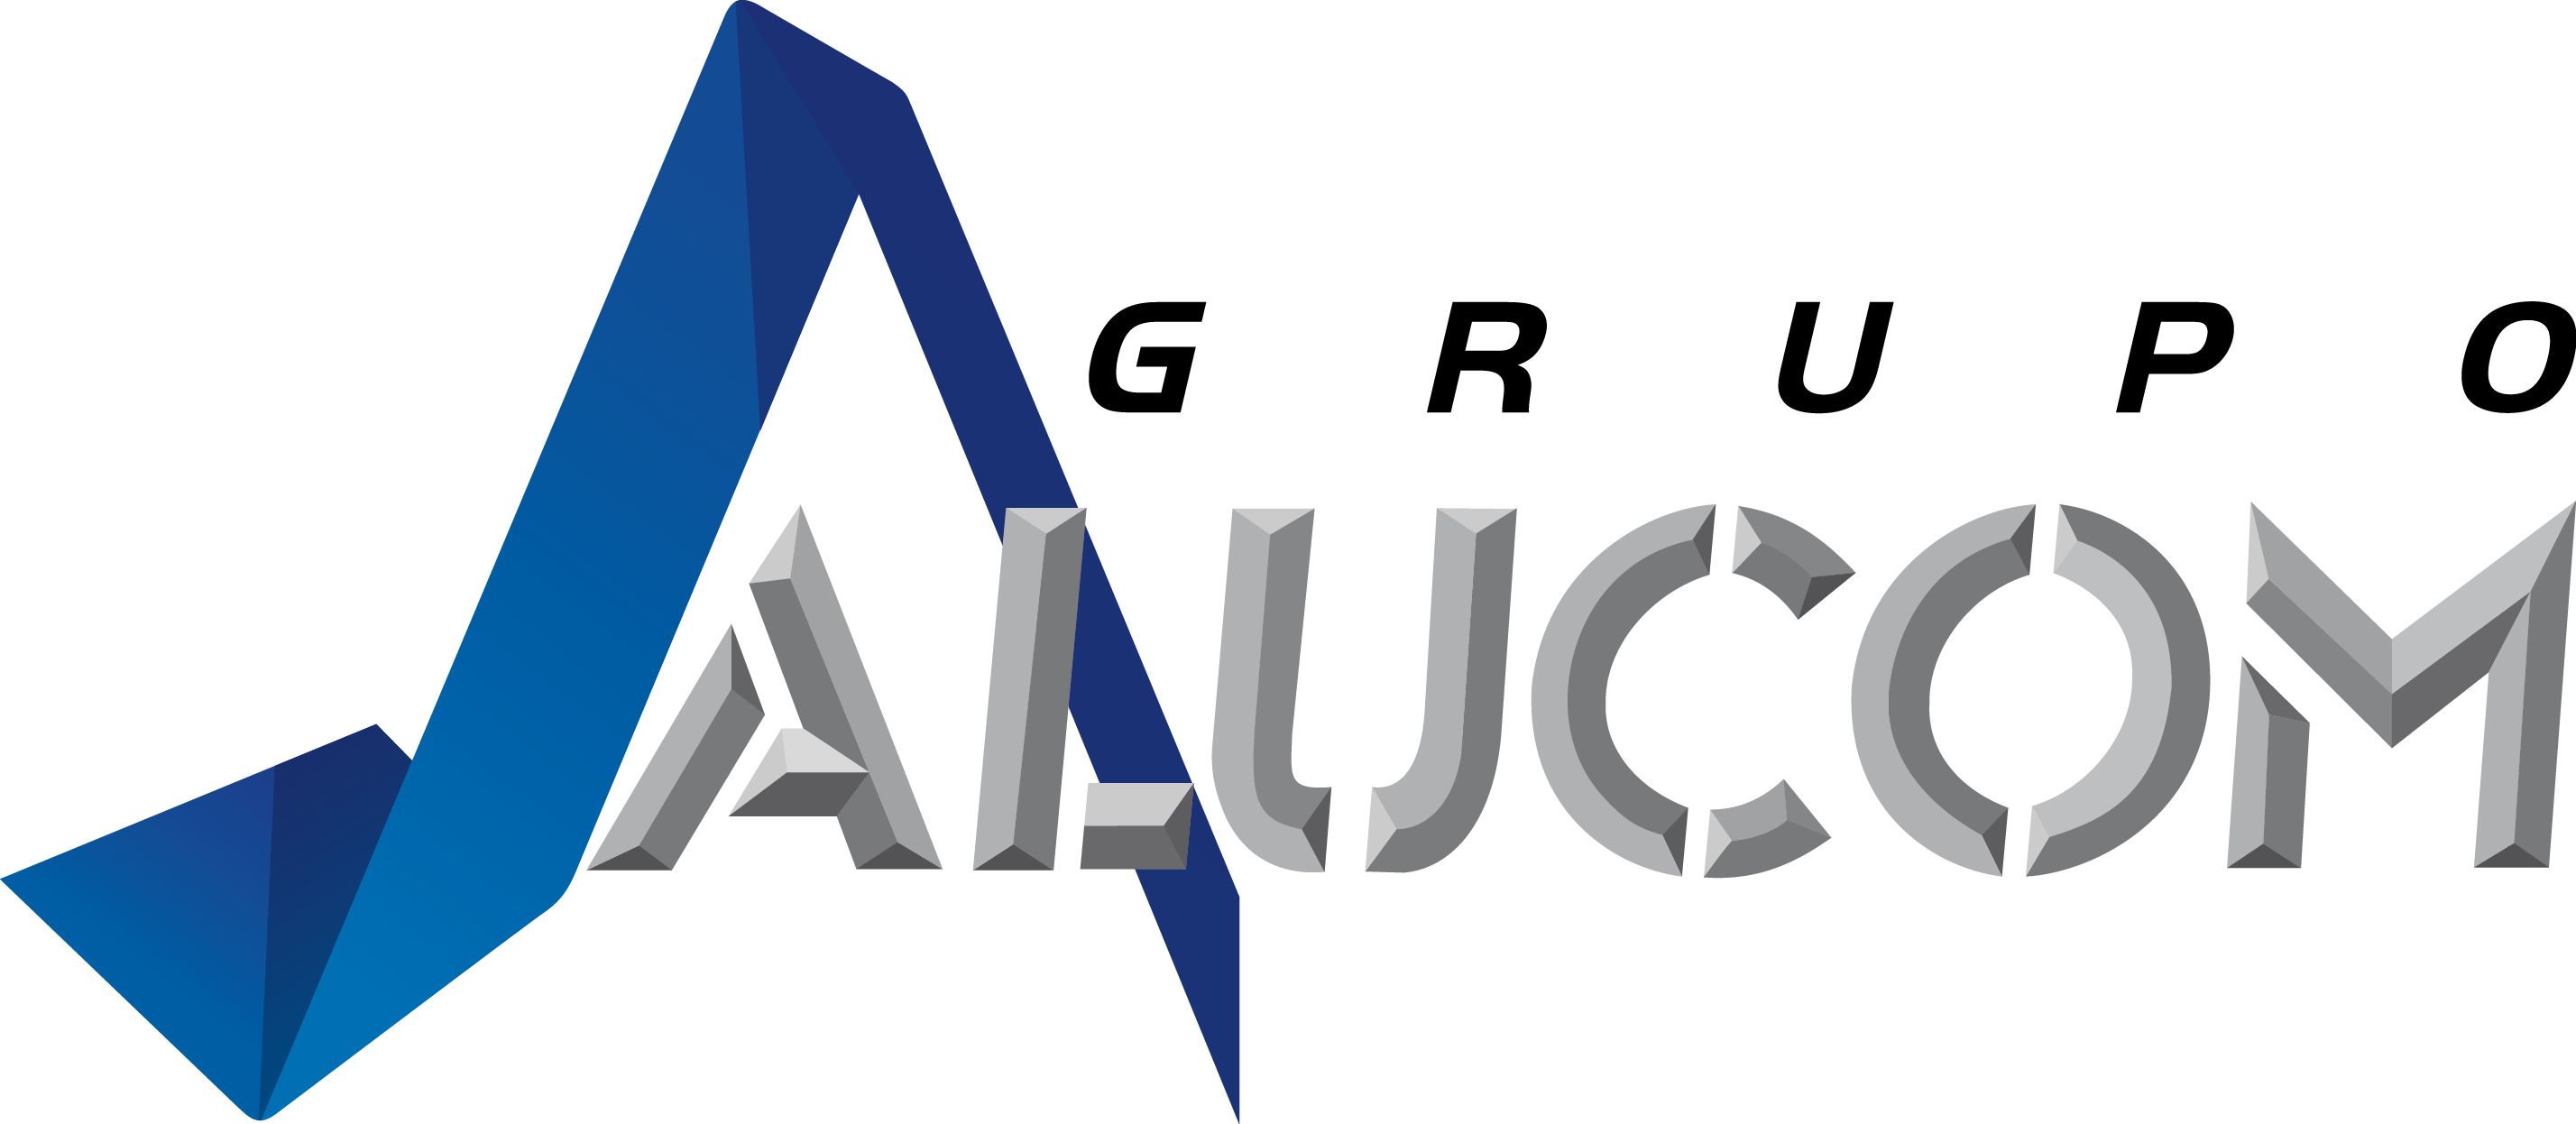 ALUCOM logo